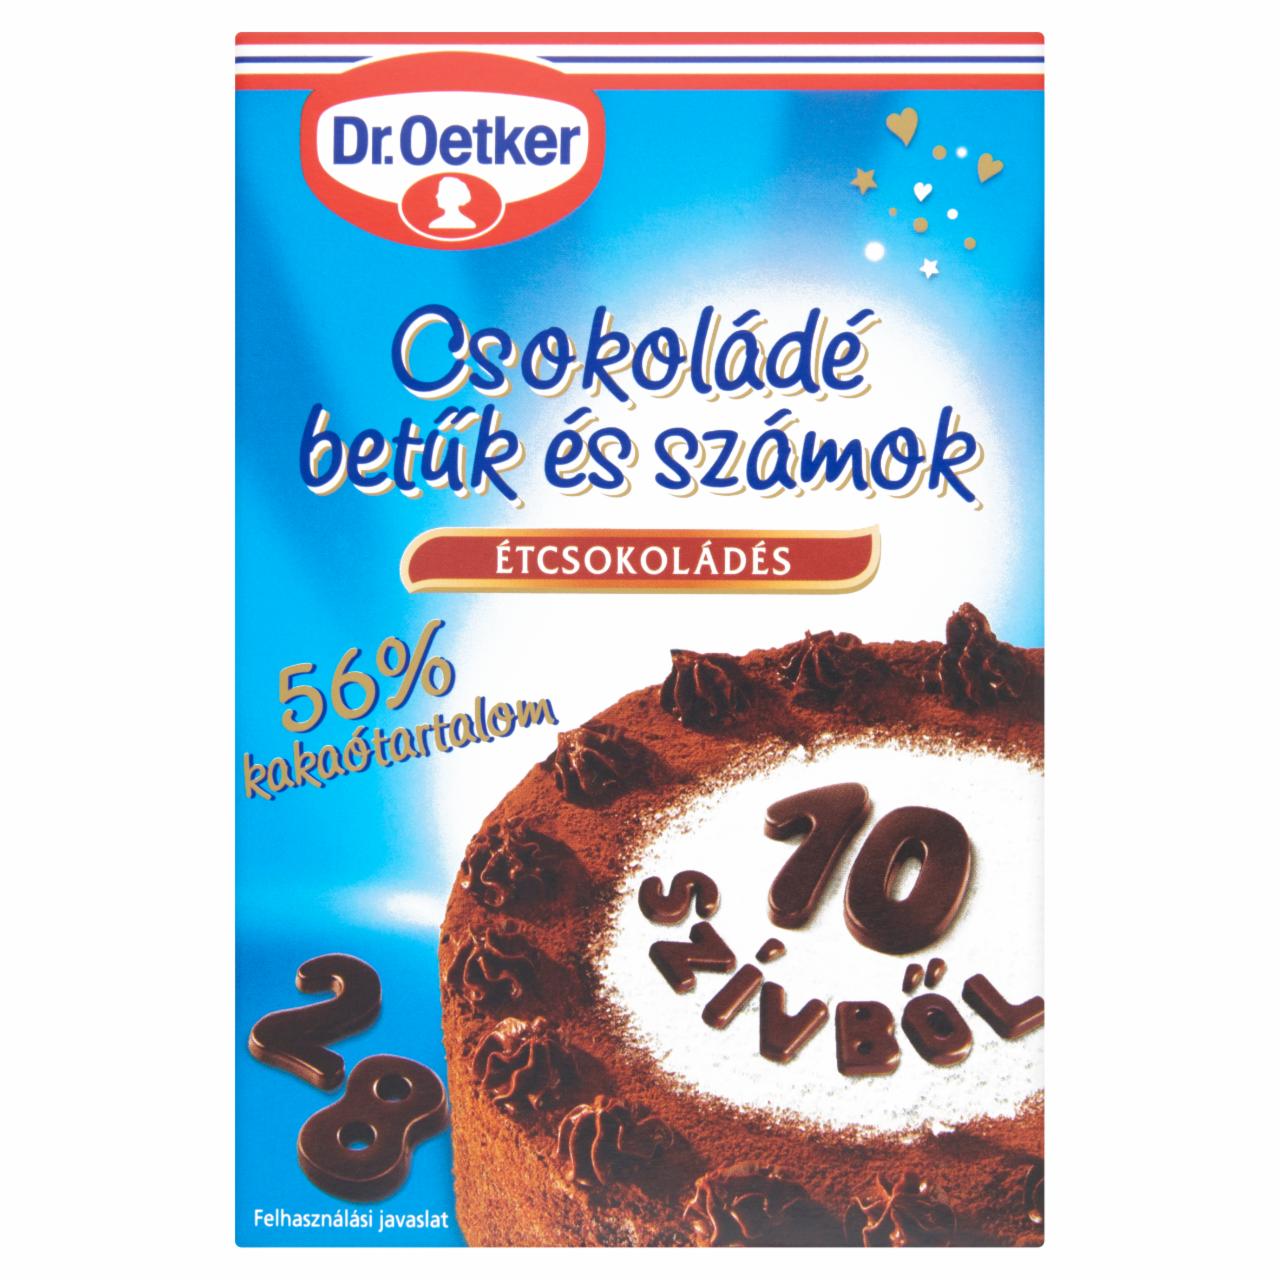 Képek - Dr. Oetker étcsokoládés csokoládé betűk és számok 60 g